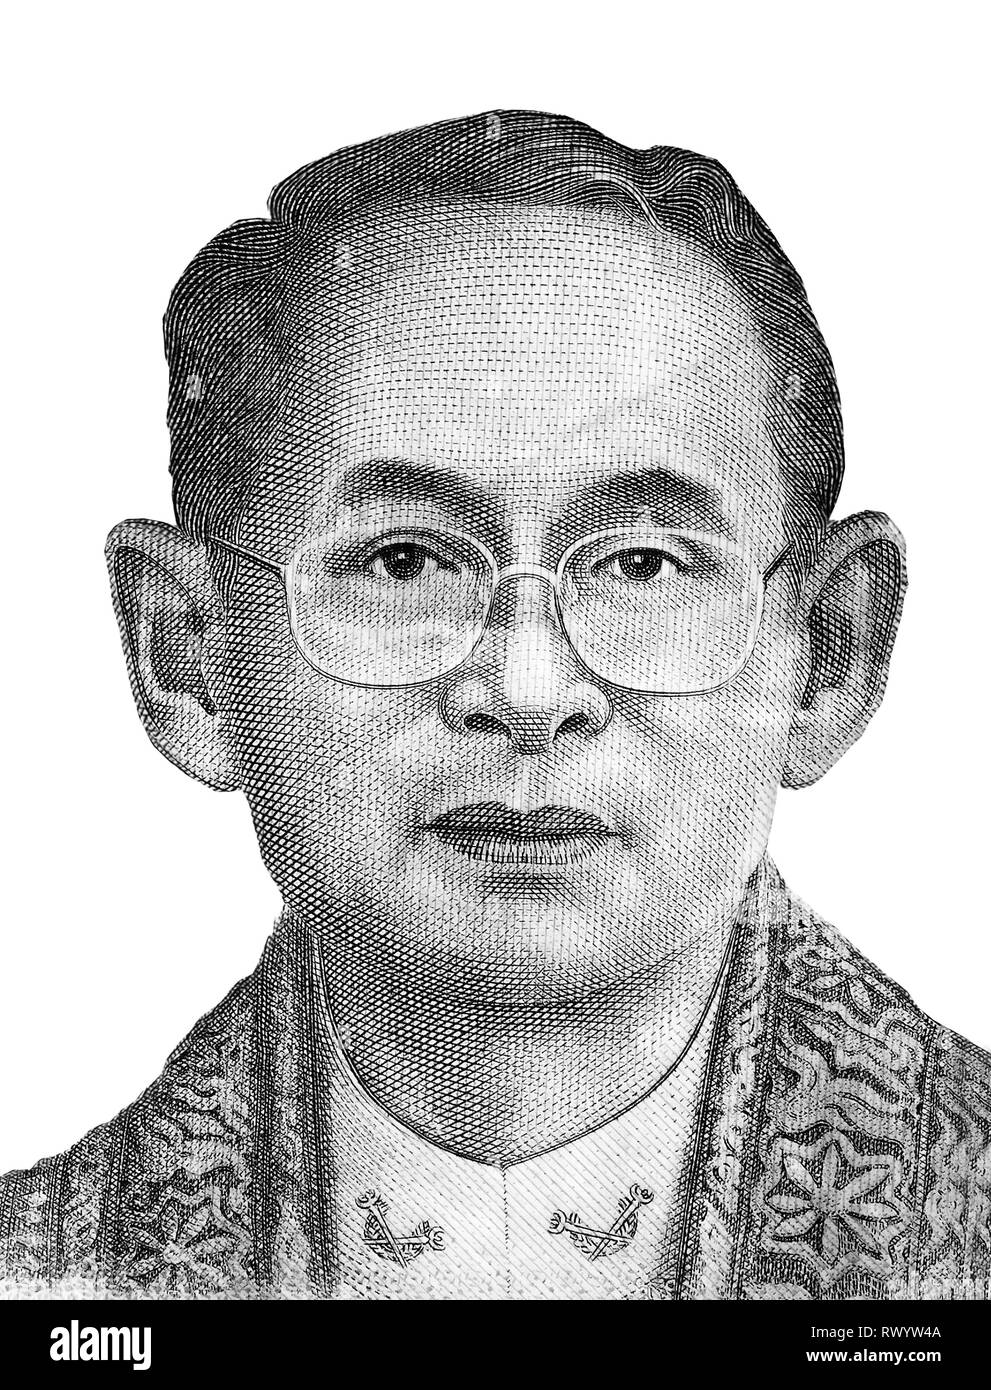 Bhumibol Adulyadet (Rama IX) - le roi de Thaïlande (1946-2016). Portrait noir et blanc isolé sur fond blanc Banque D'Images